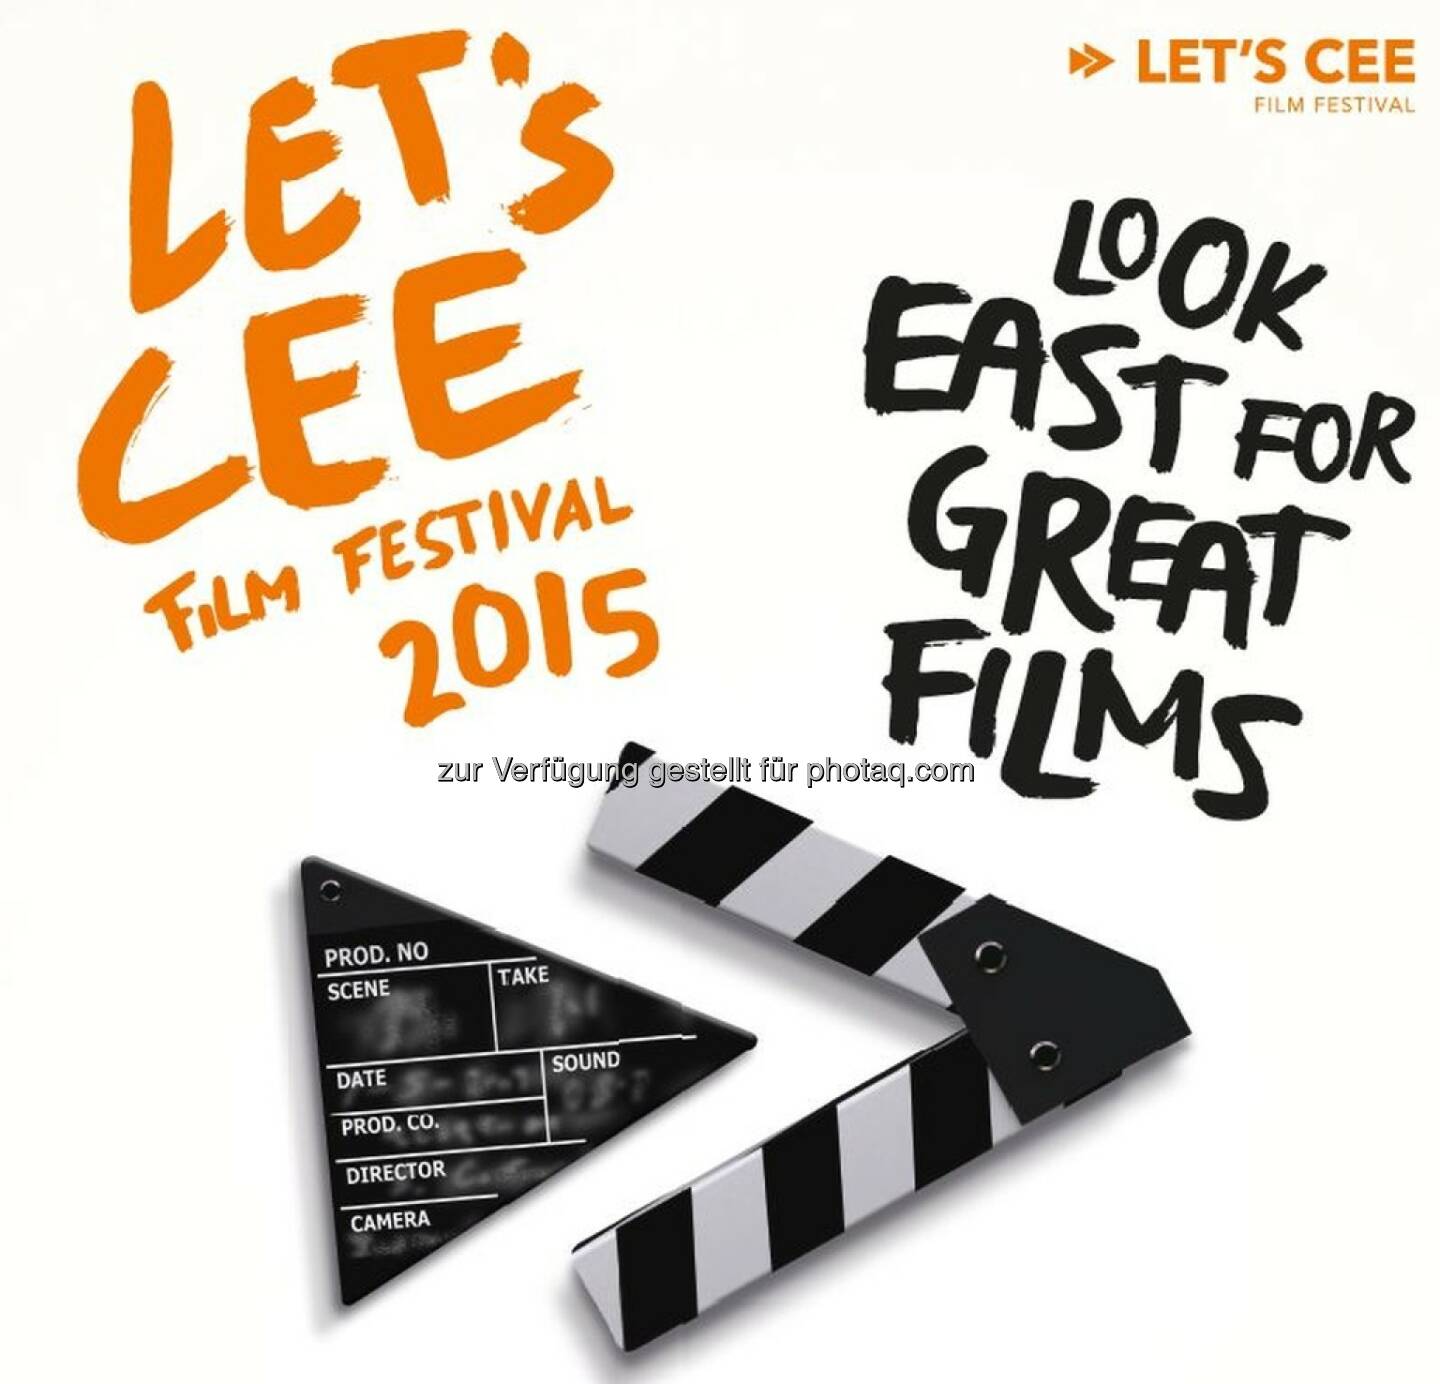 Ceenema at its best - das Let's Cee Film Festival startet in Wien : 11 Tage, 118 Filme, über 130 ausländische Gäste und 182 Screenings : Fotocredit: Paulina & Thomas Photography